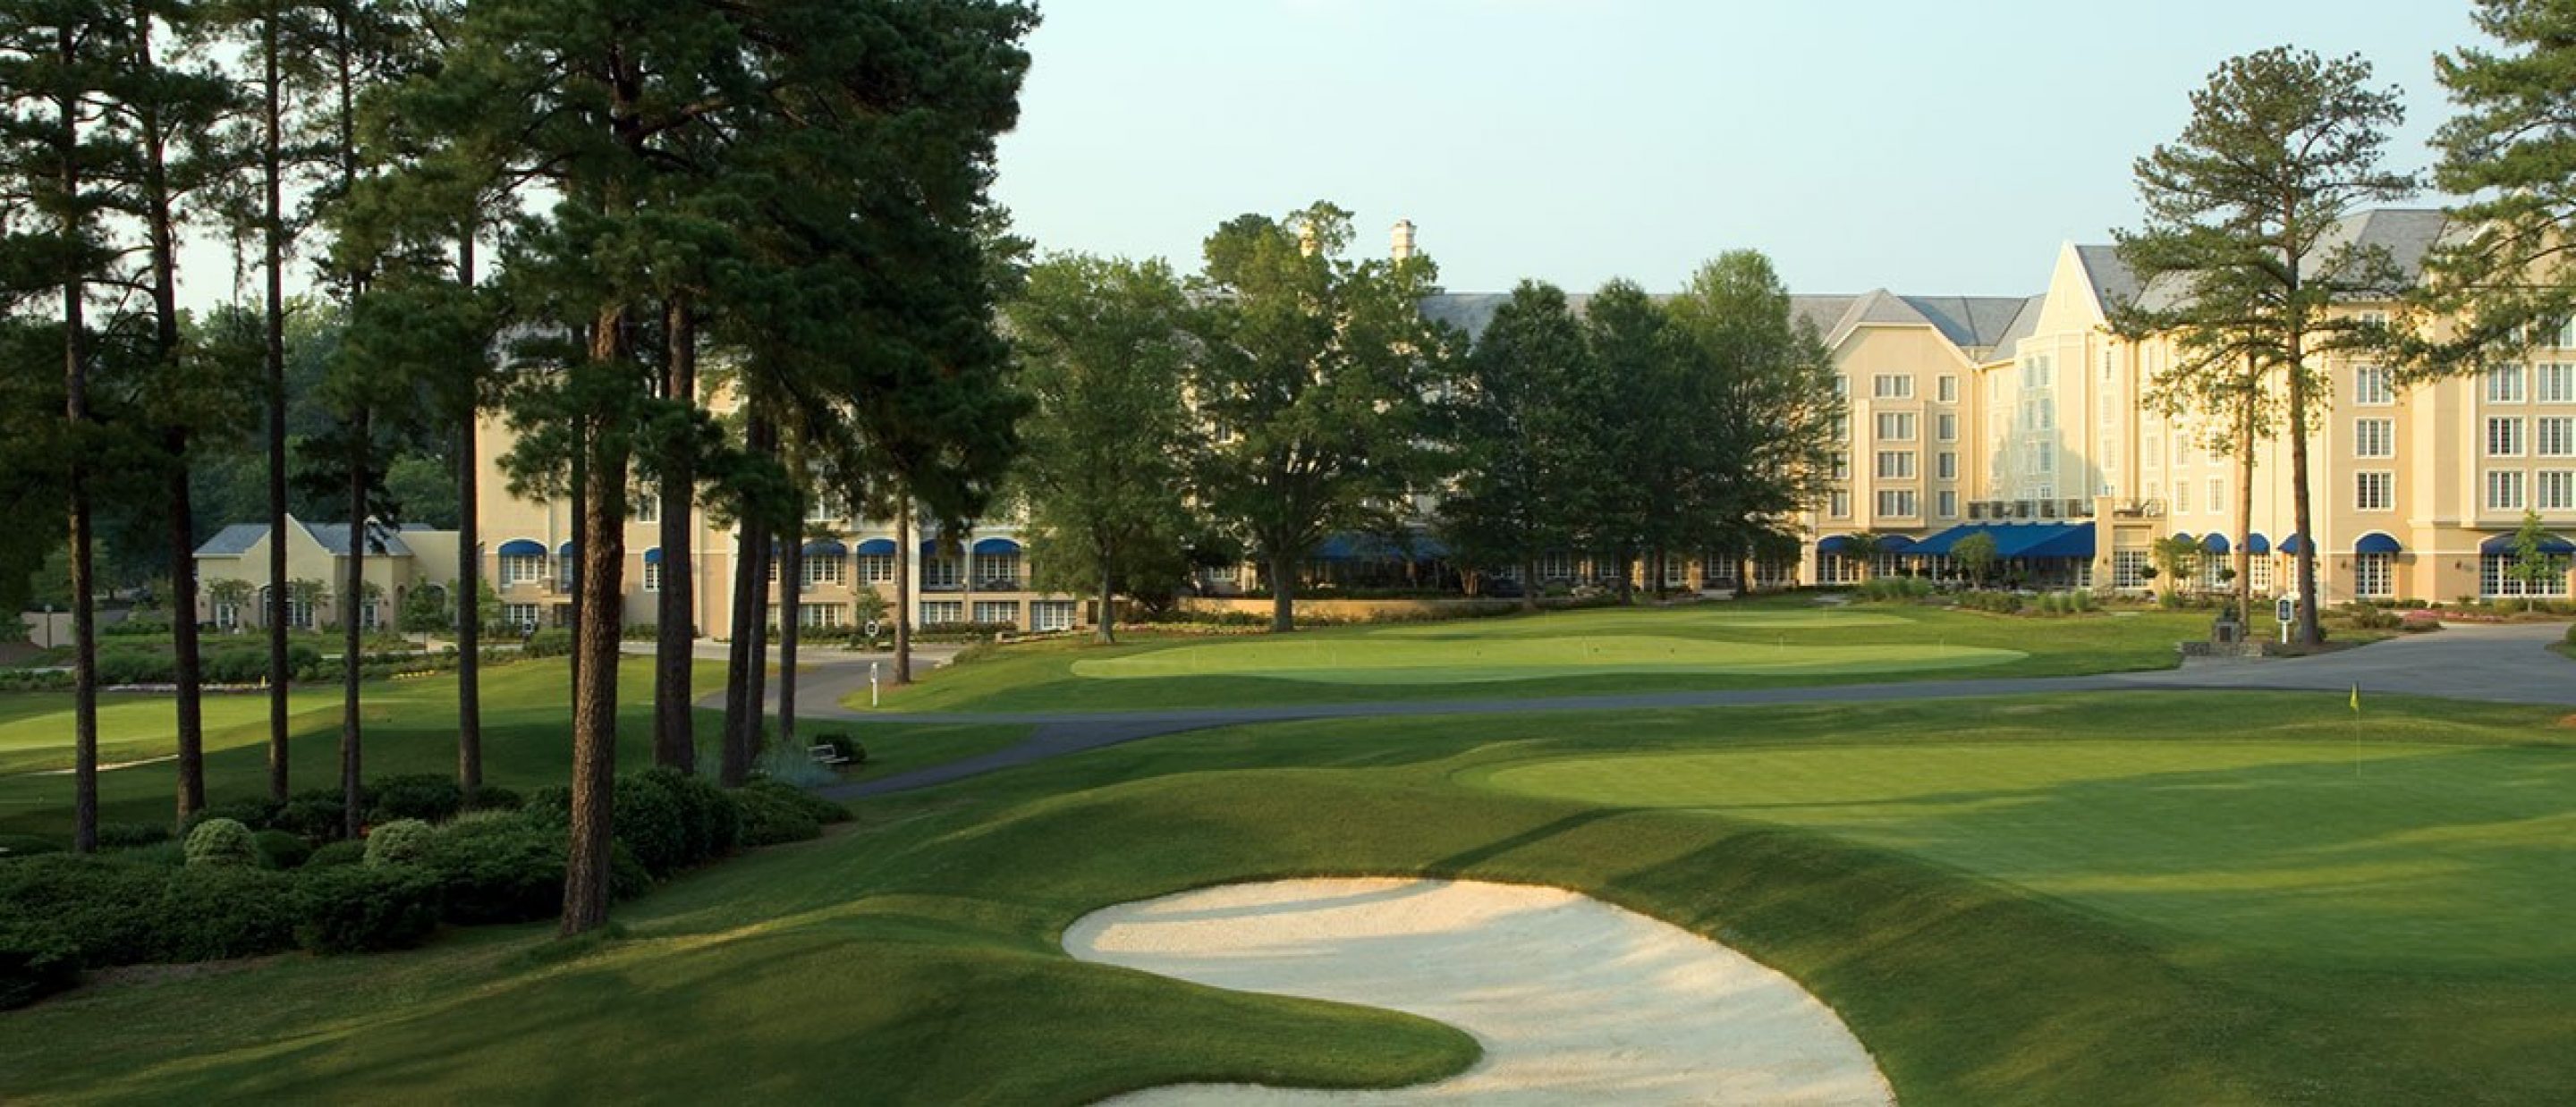 Washington Duke Inn and Golf Club course